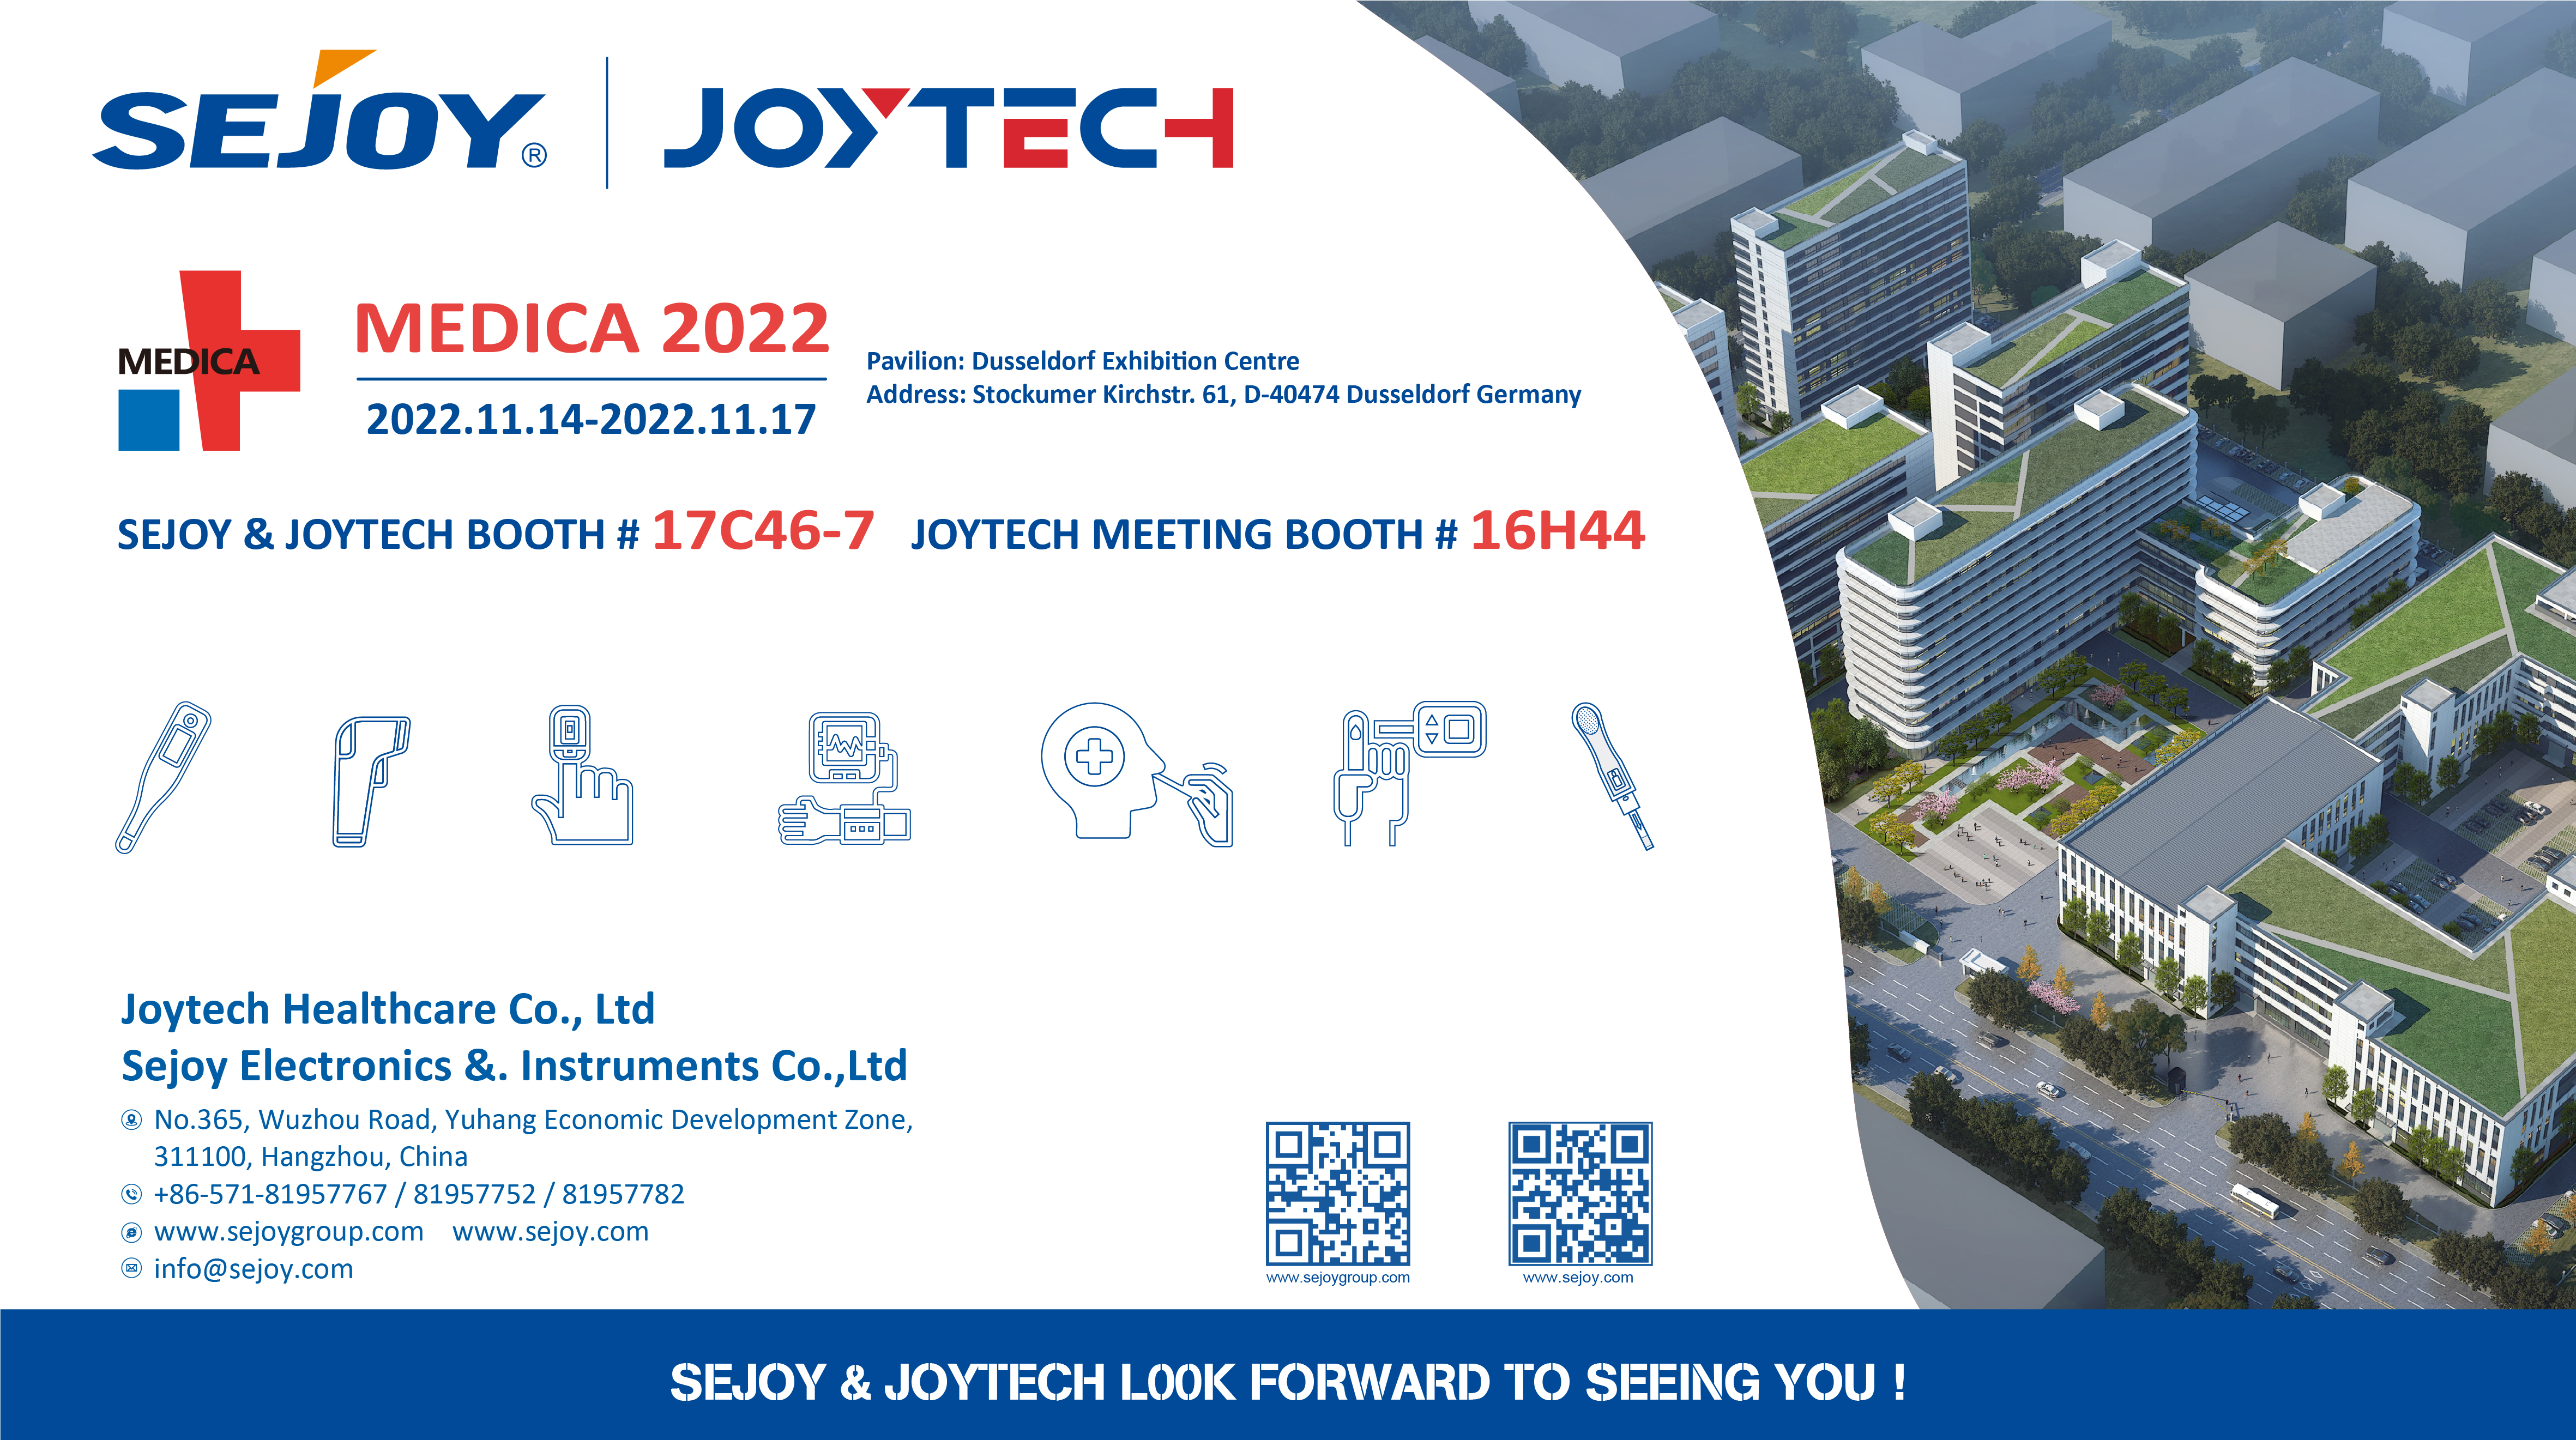 Pêşniyara pêşangeha Joytech ji bo nîvê duyemîn 2022